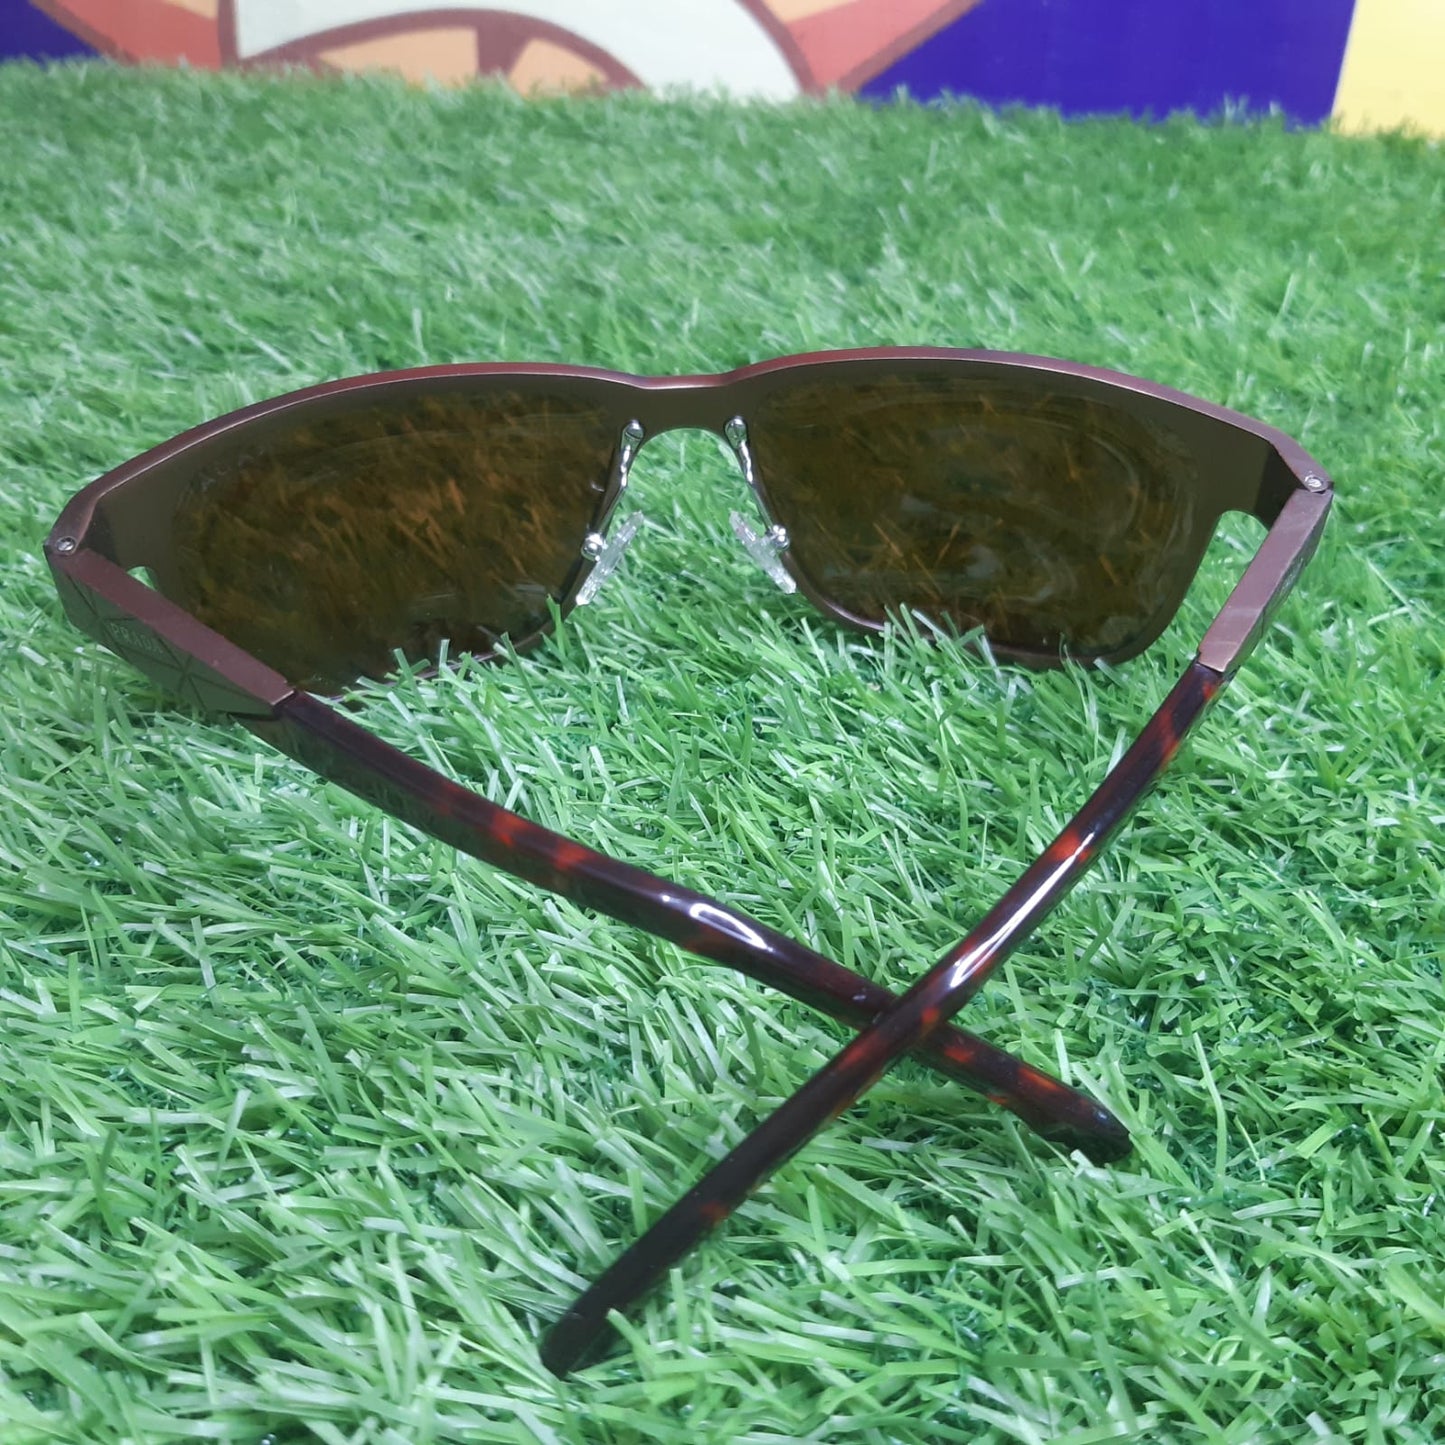 Prada Sport | Sunglasses